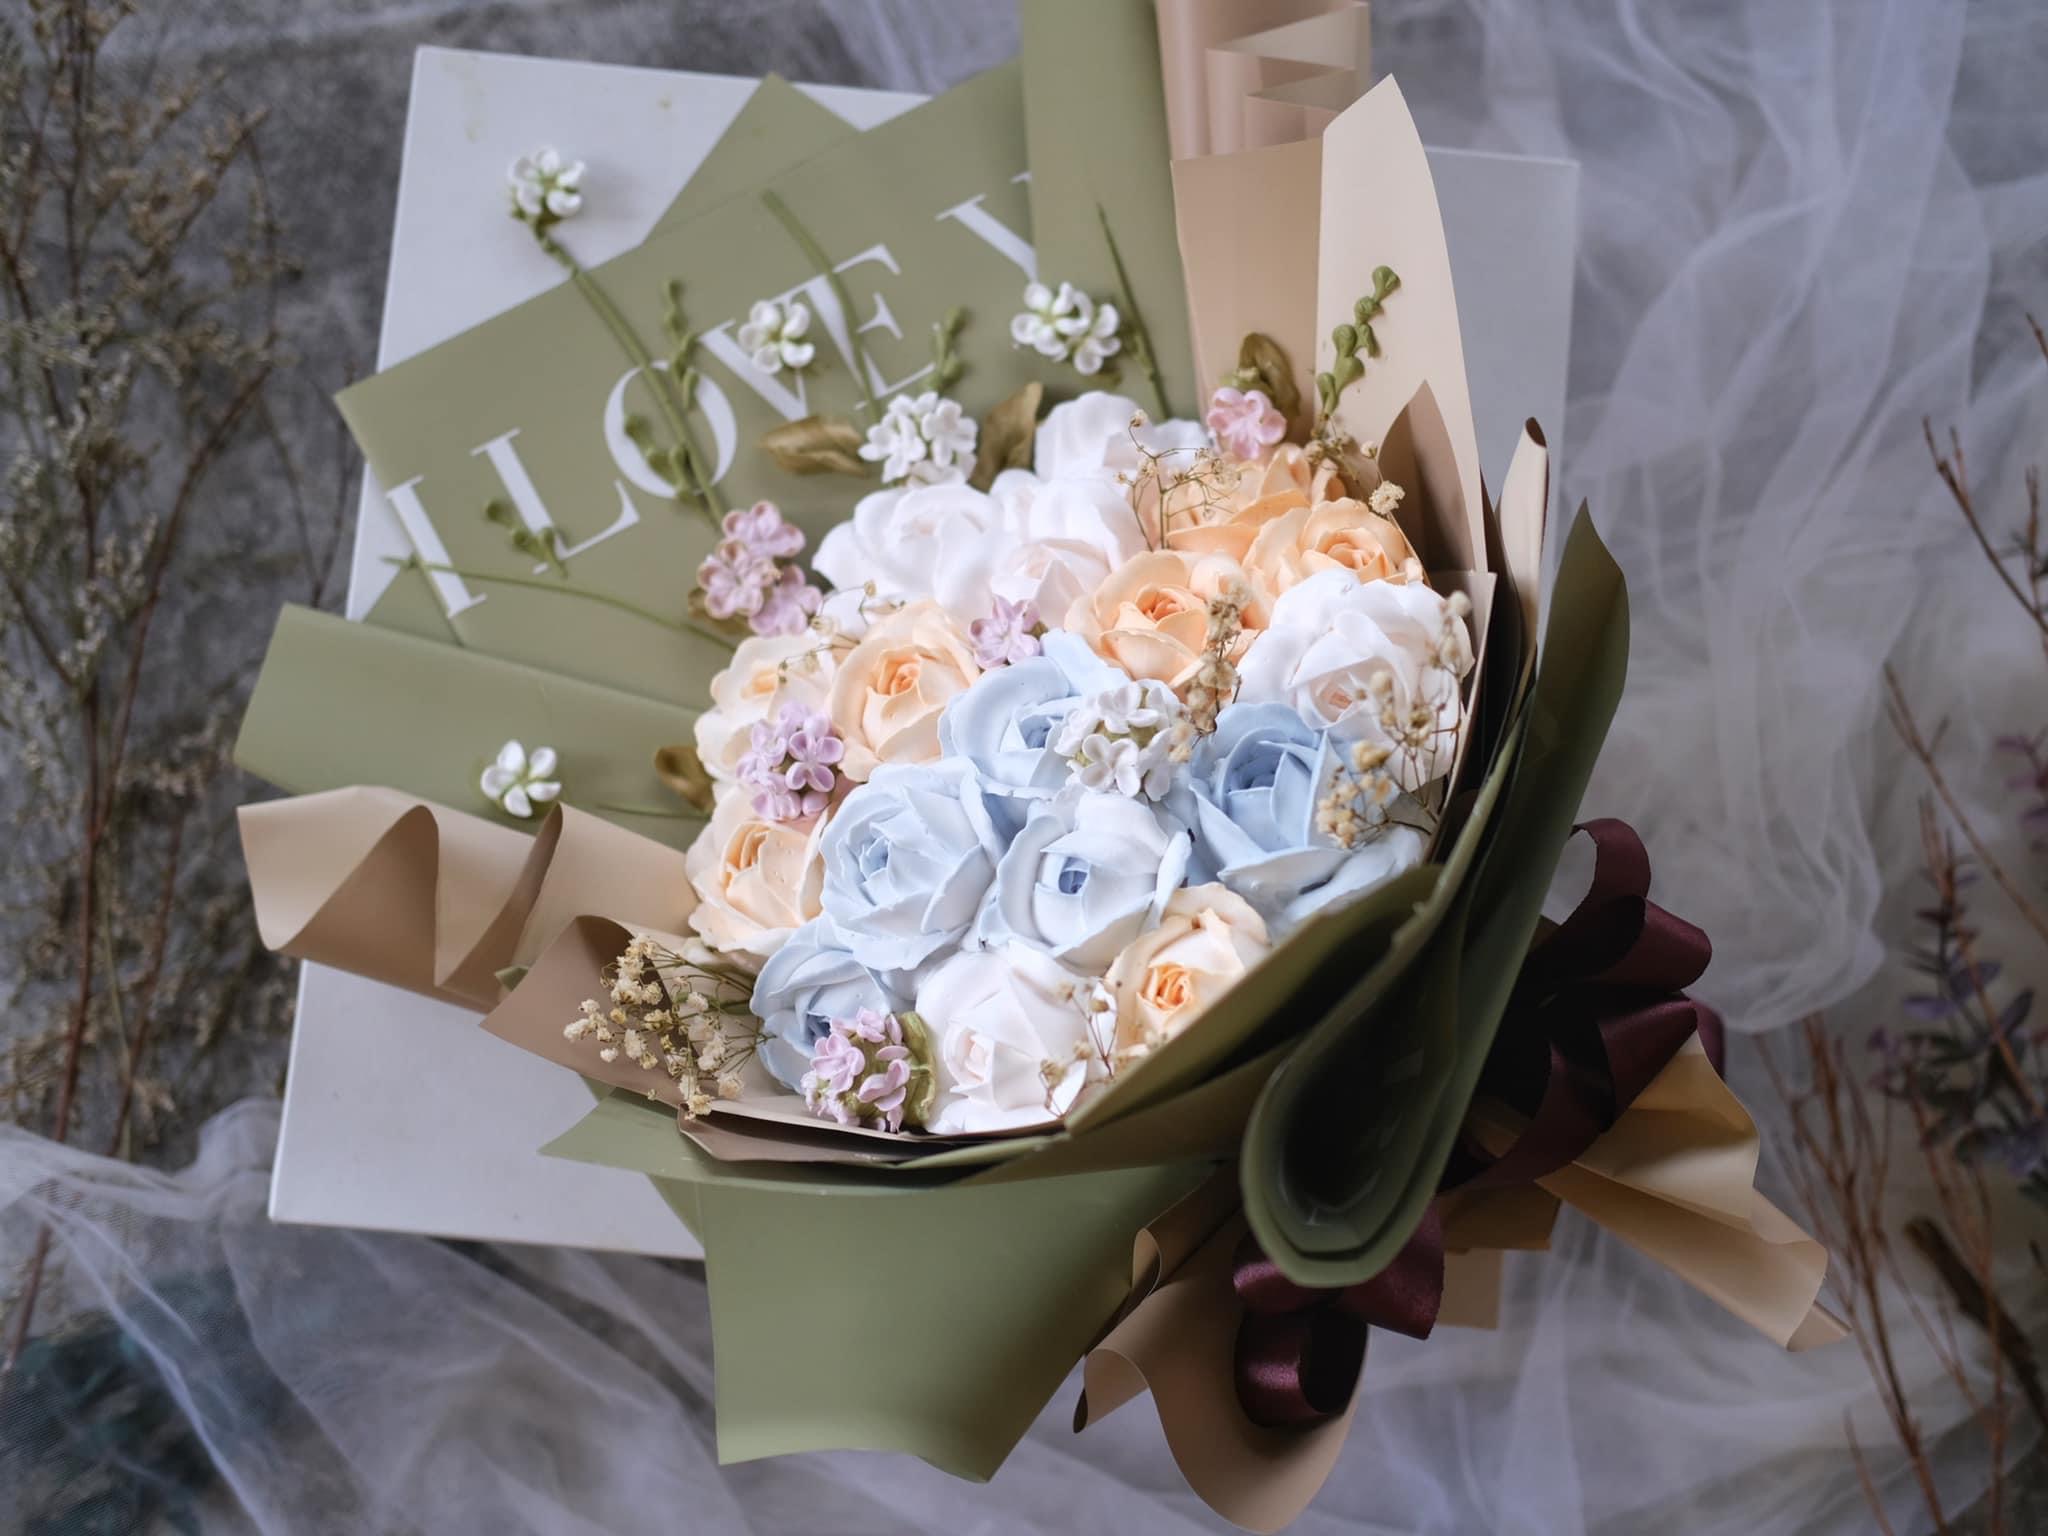 Bó hoa kem: Bạn là người yêu hoa? Hãy chiêm ngưỡng bó hoa kem tuyệt đẹp này! Sắc trắng của những đóa hoa phát triển rực rỡ, xen lẫn cùng sắc hồng tươi tắn mang lại cho bạn cảm giác vô cùng thư giãn và thanh thản.